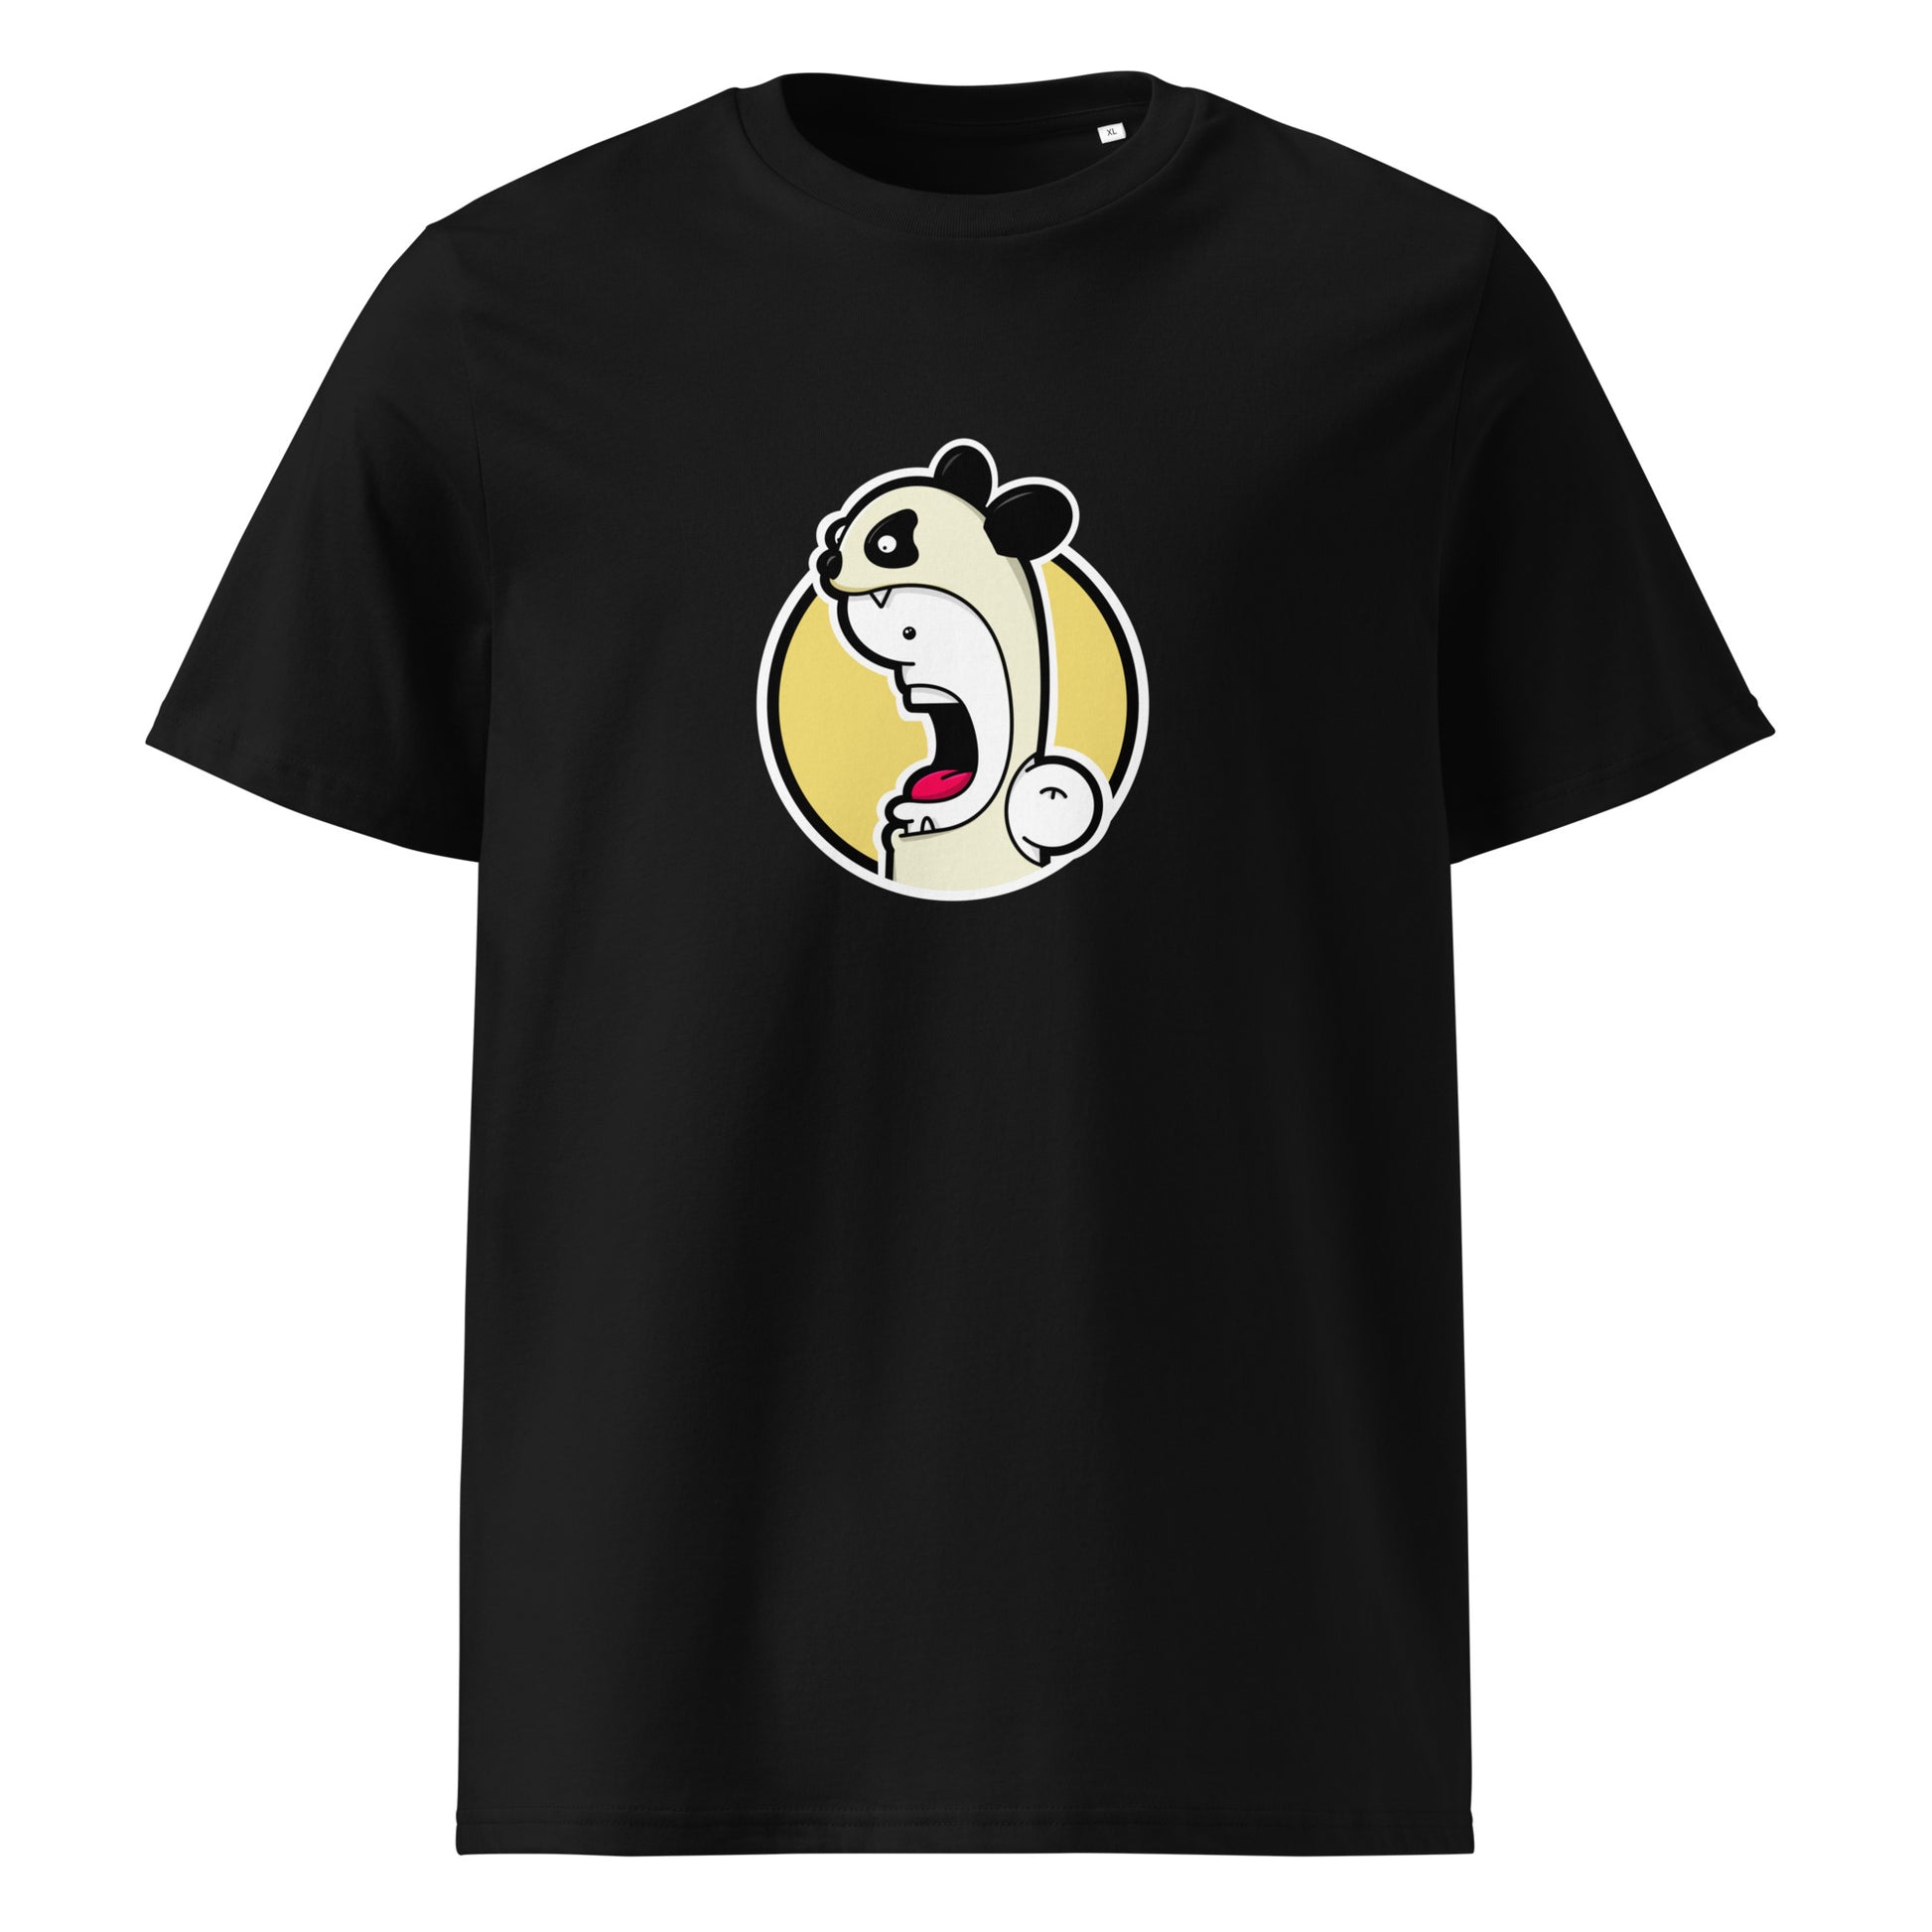 Shouter vs Panda t-shirt